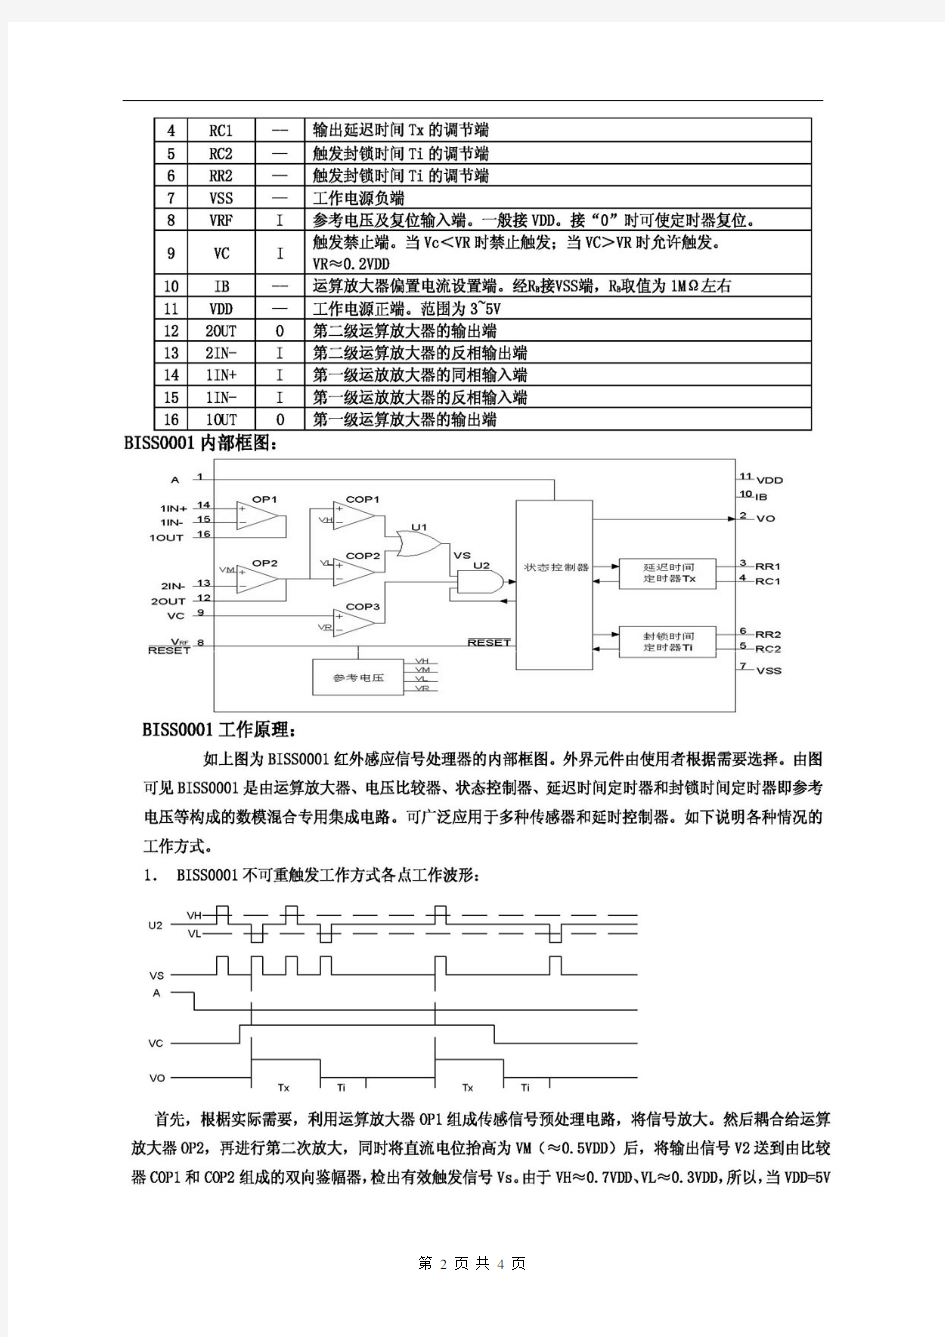 红外传感芯片-BISS0001传感器电路